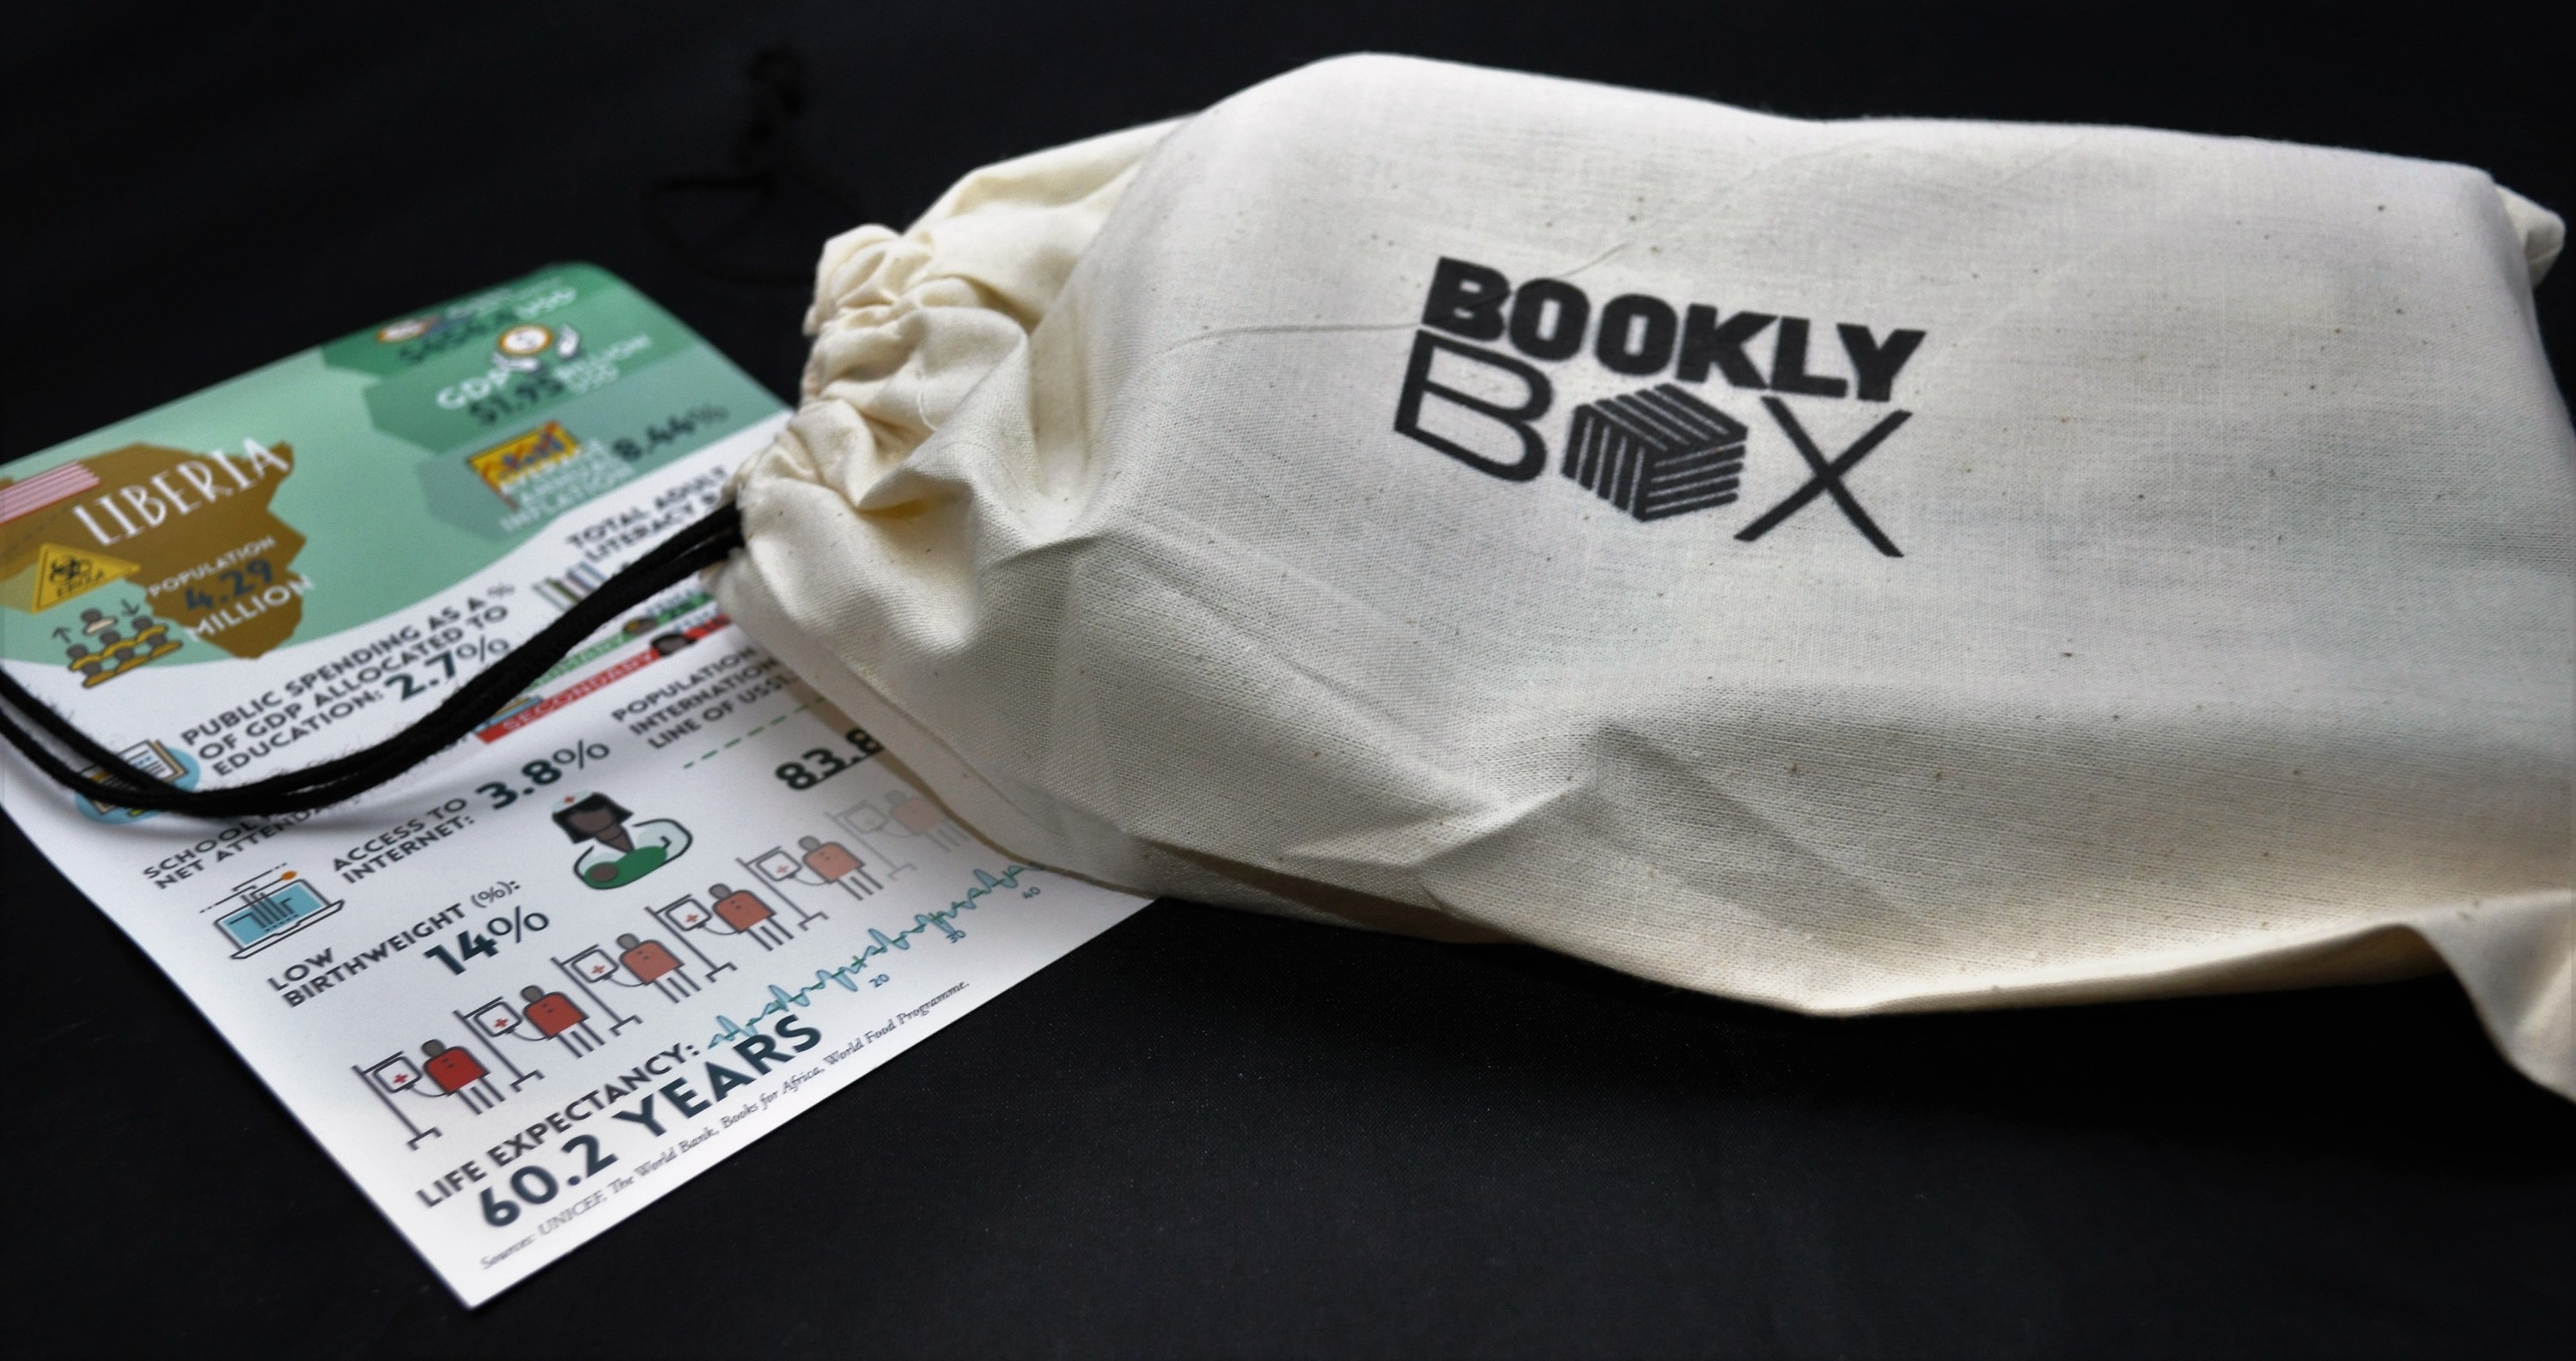 bookly-box-october-2016-bag